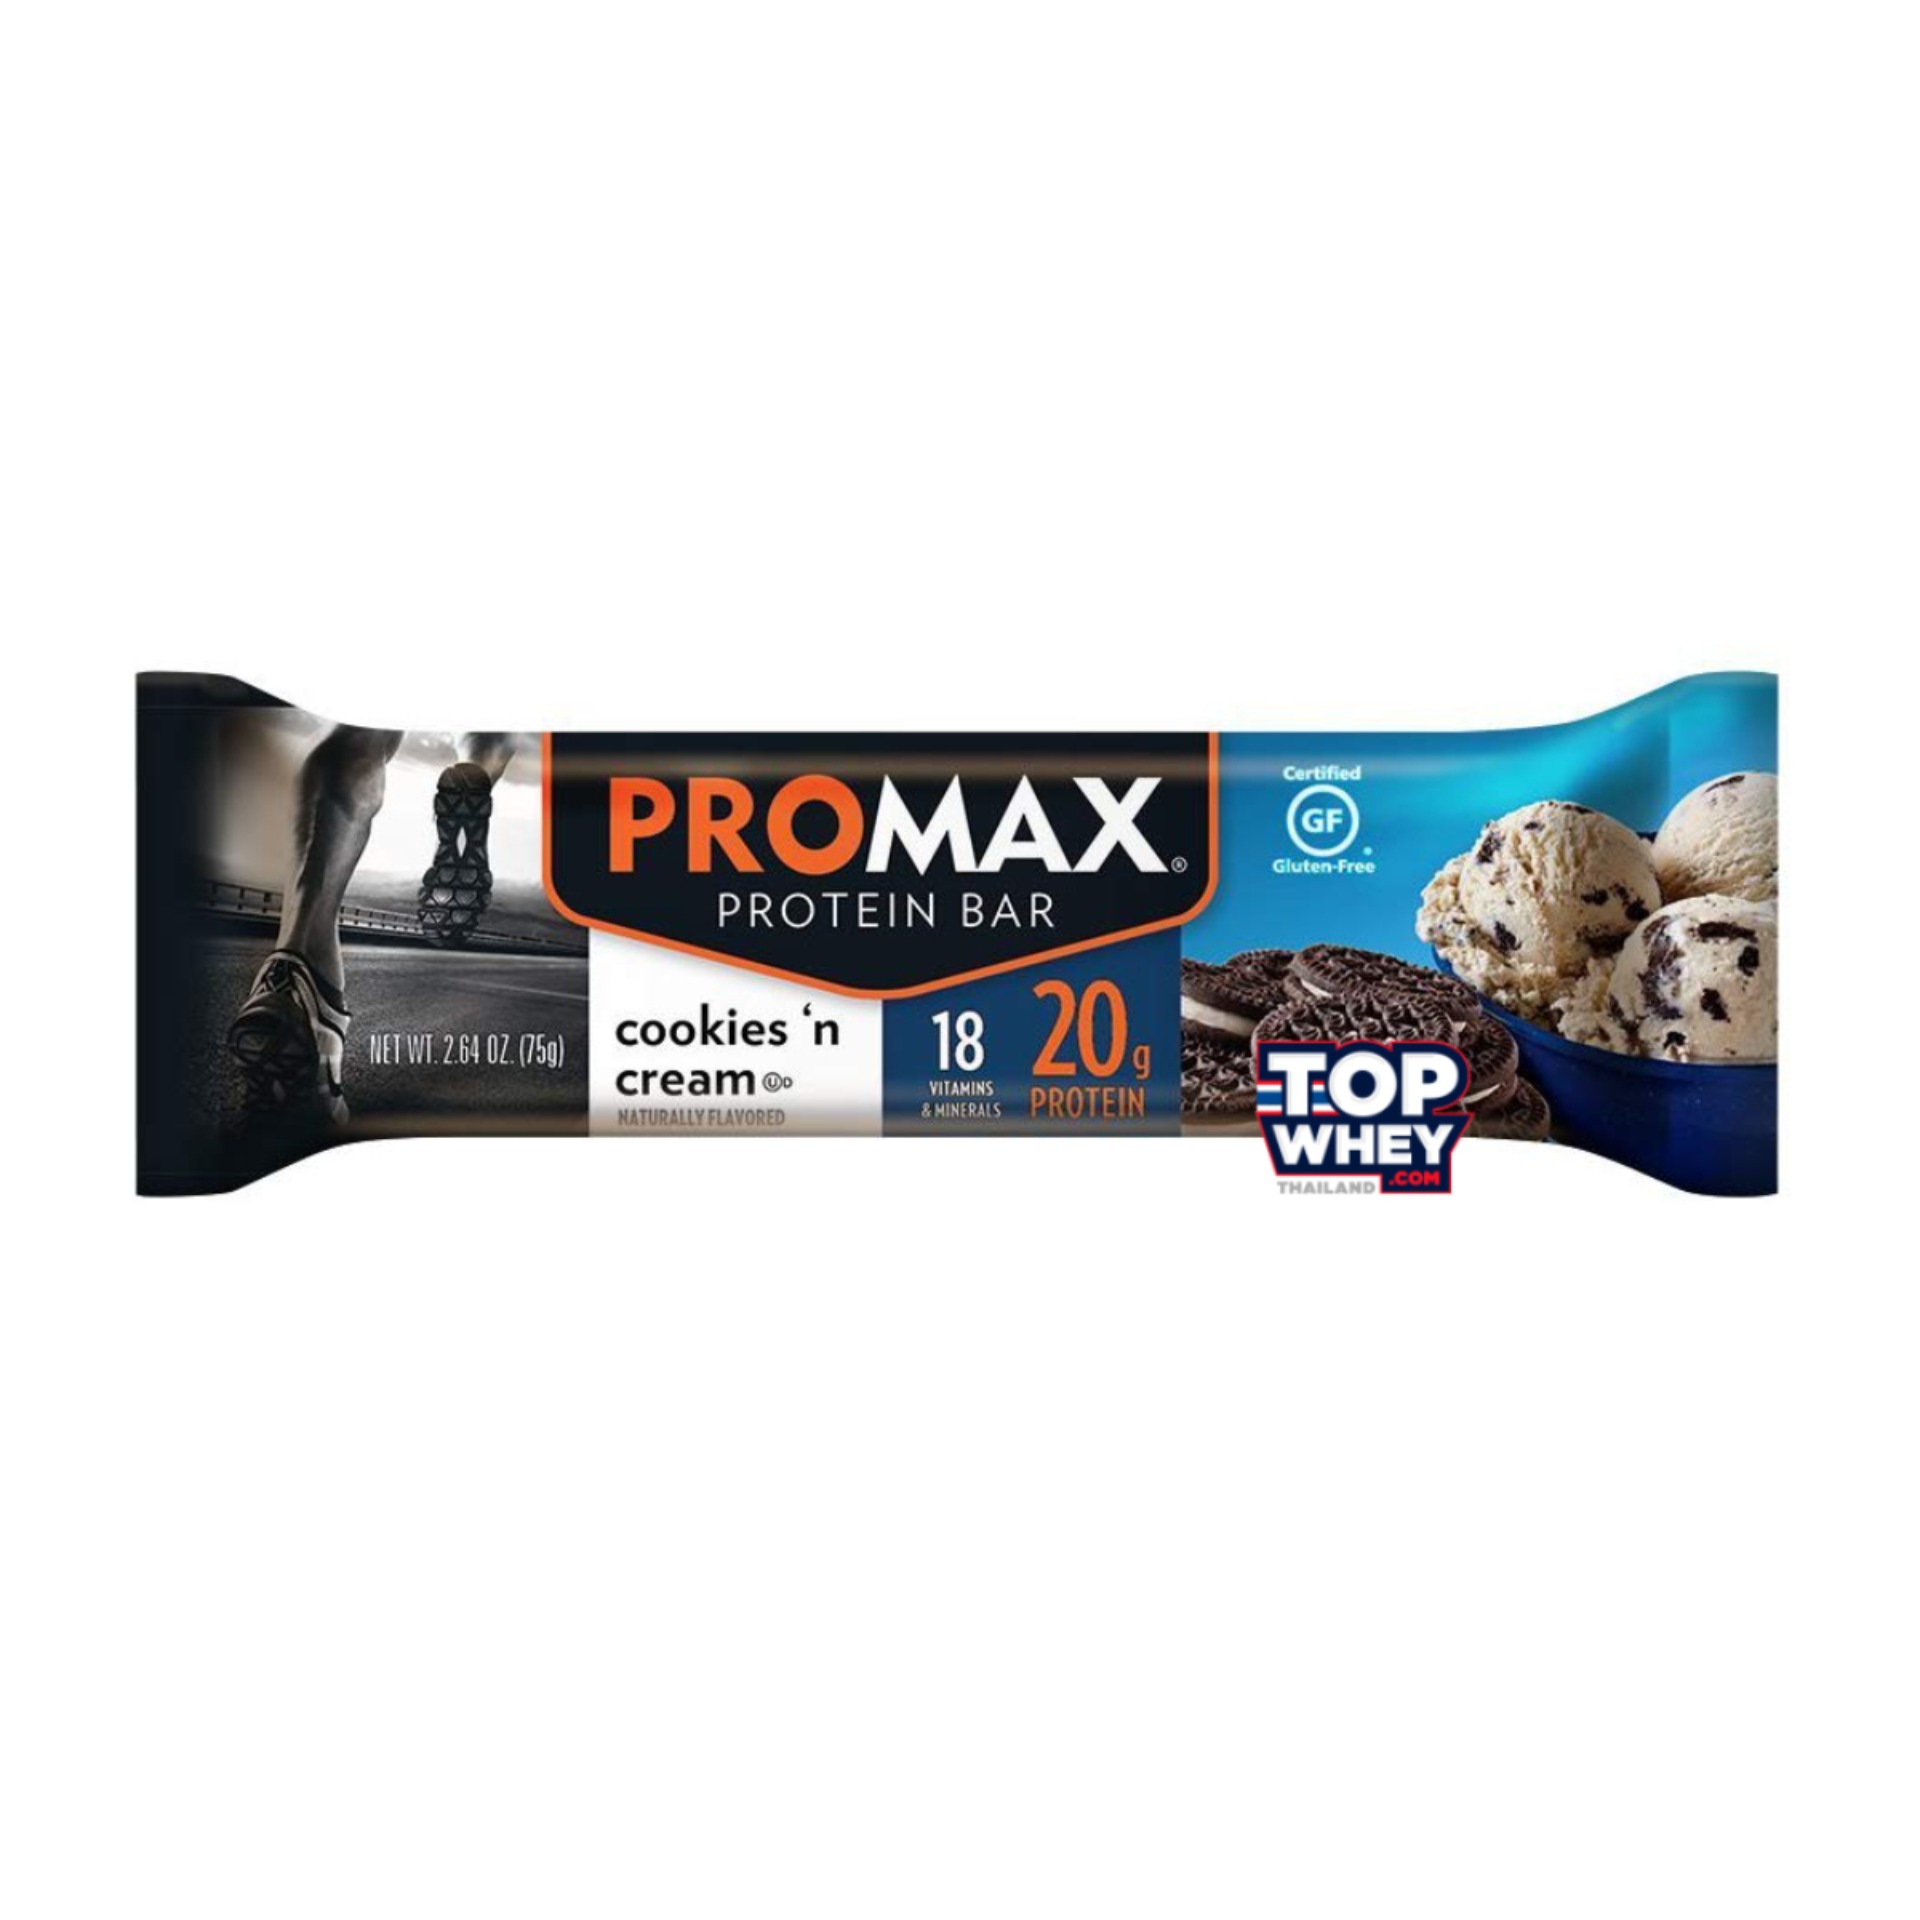 Promax Protein Bars - 1 Bar Cookies & Cream  โปรตีนบาร์  มีส่วนผสมของเวย์โปรตีน  สามารถทานเล่นหรือแทนมื้ออาหารได้  มีปริมาณของโปรตีนที่สูง